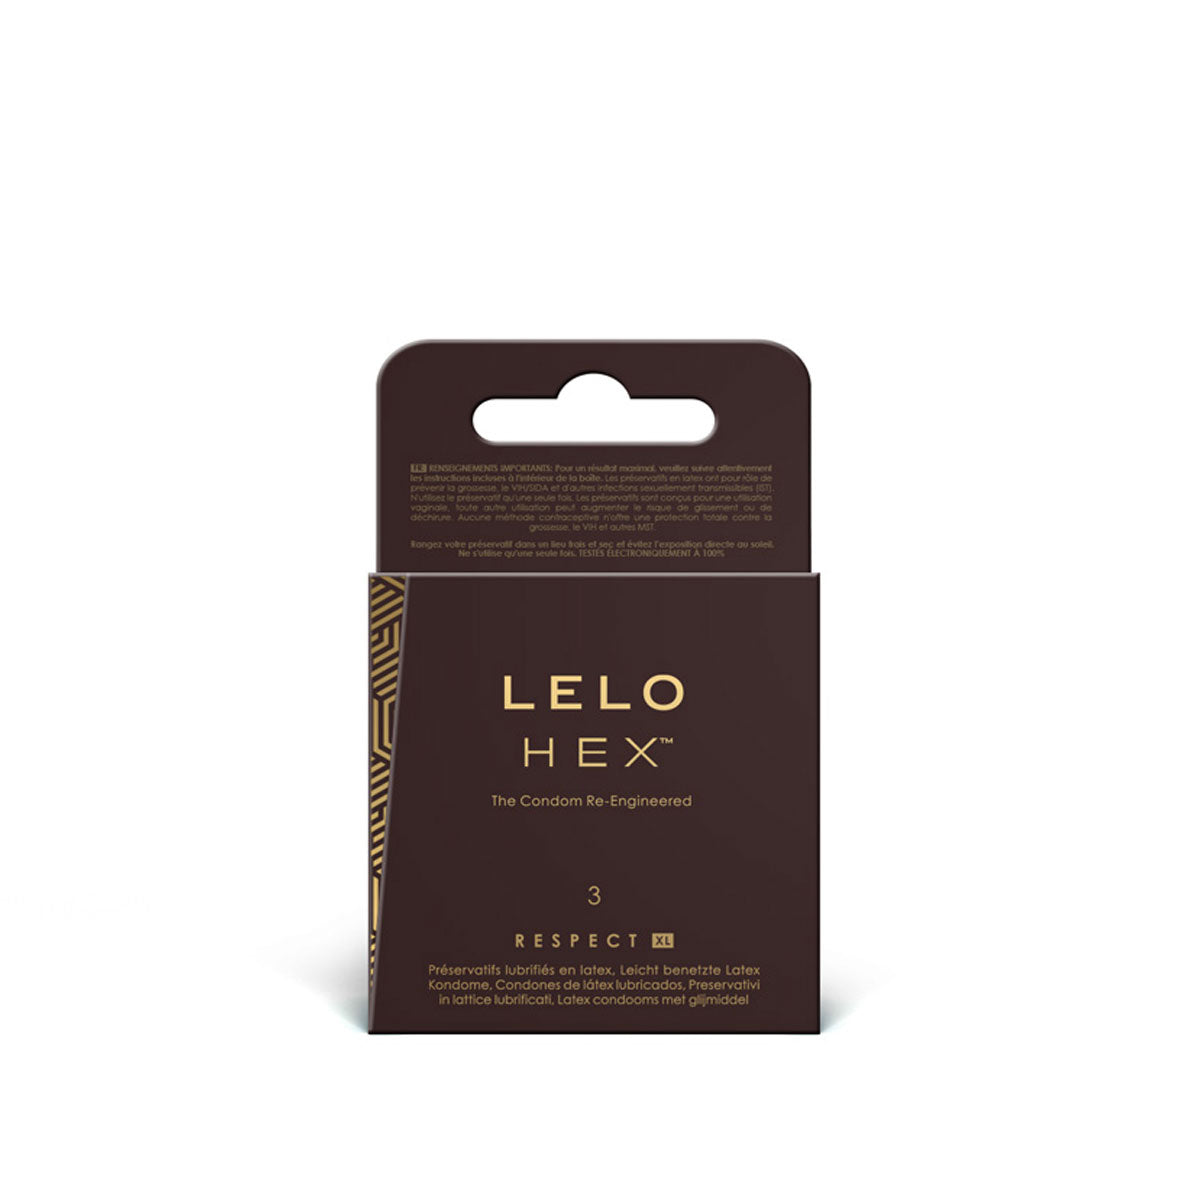 LELO Lubes & Enhancements LELO Hex Respect XL Condoms 3pk